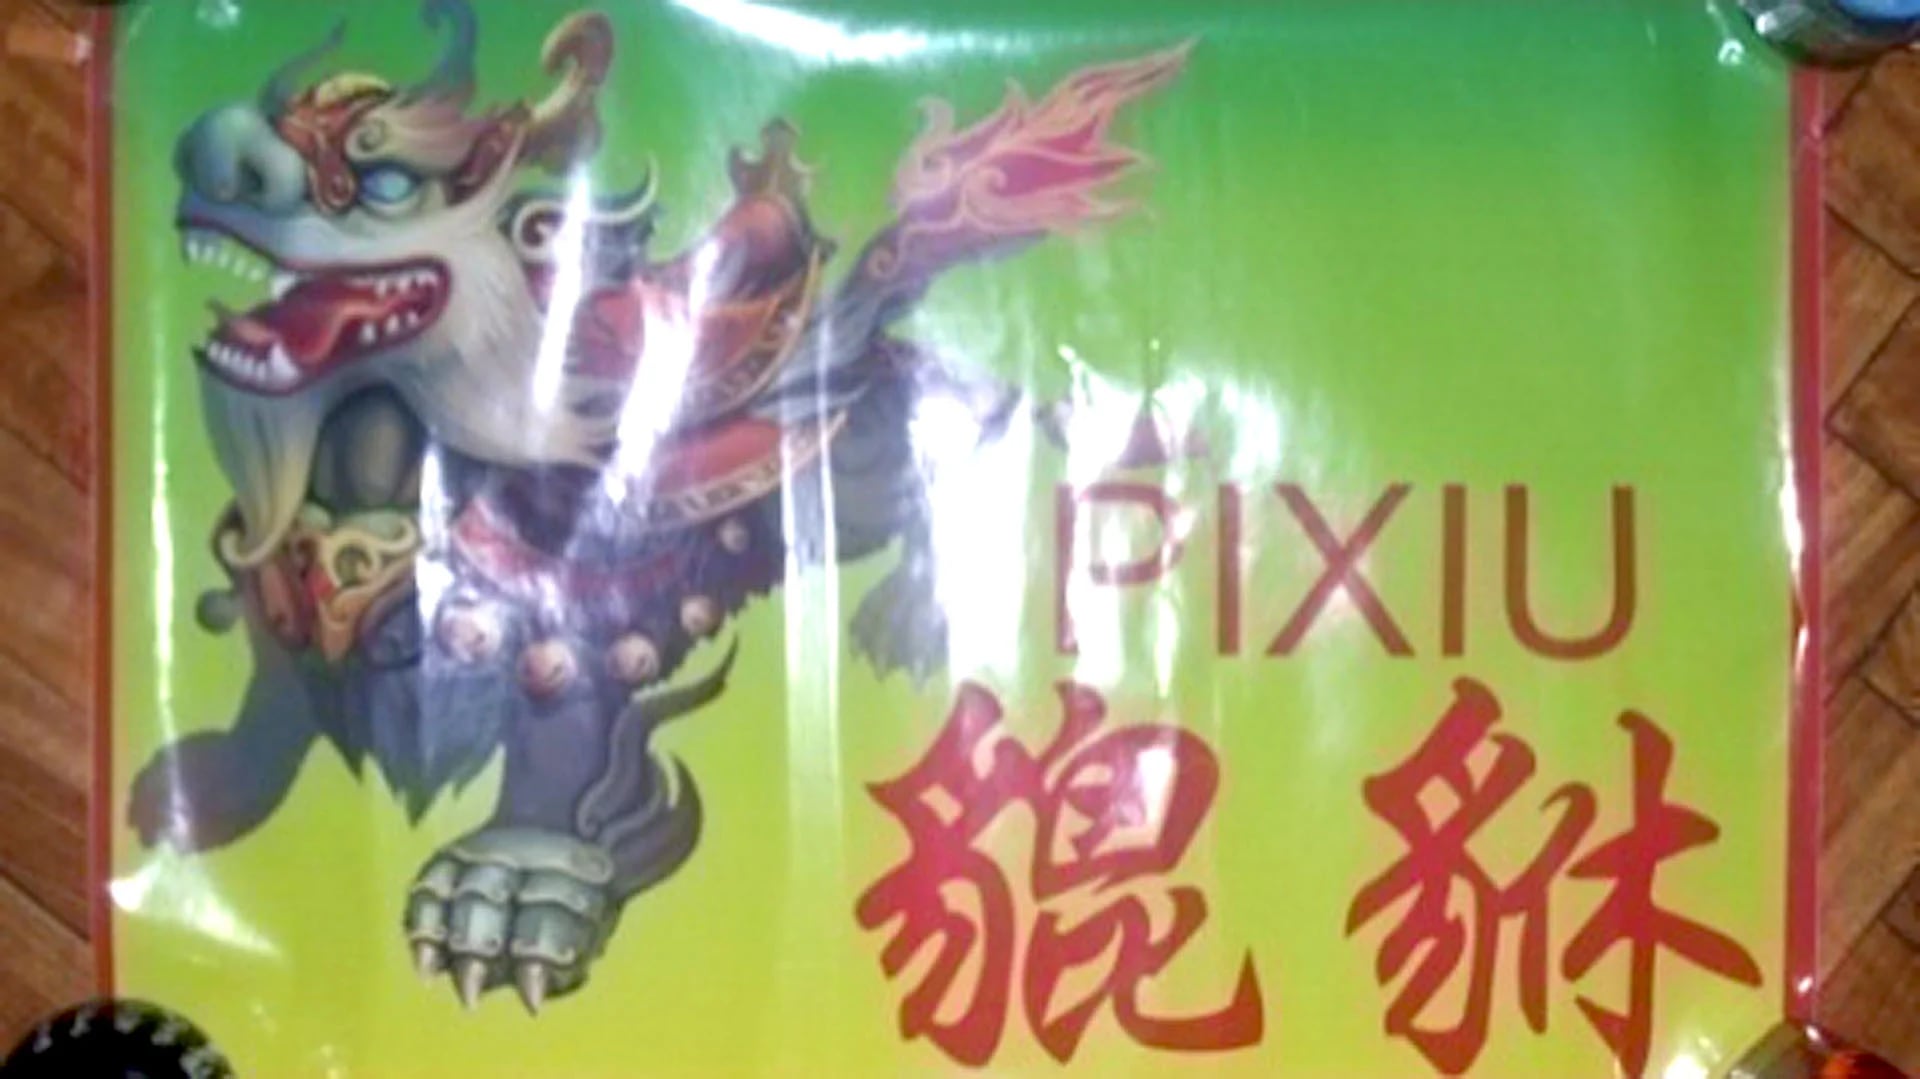 Sticker del clan Pixiu, visible en los supermercados que extorsionaba